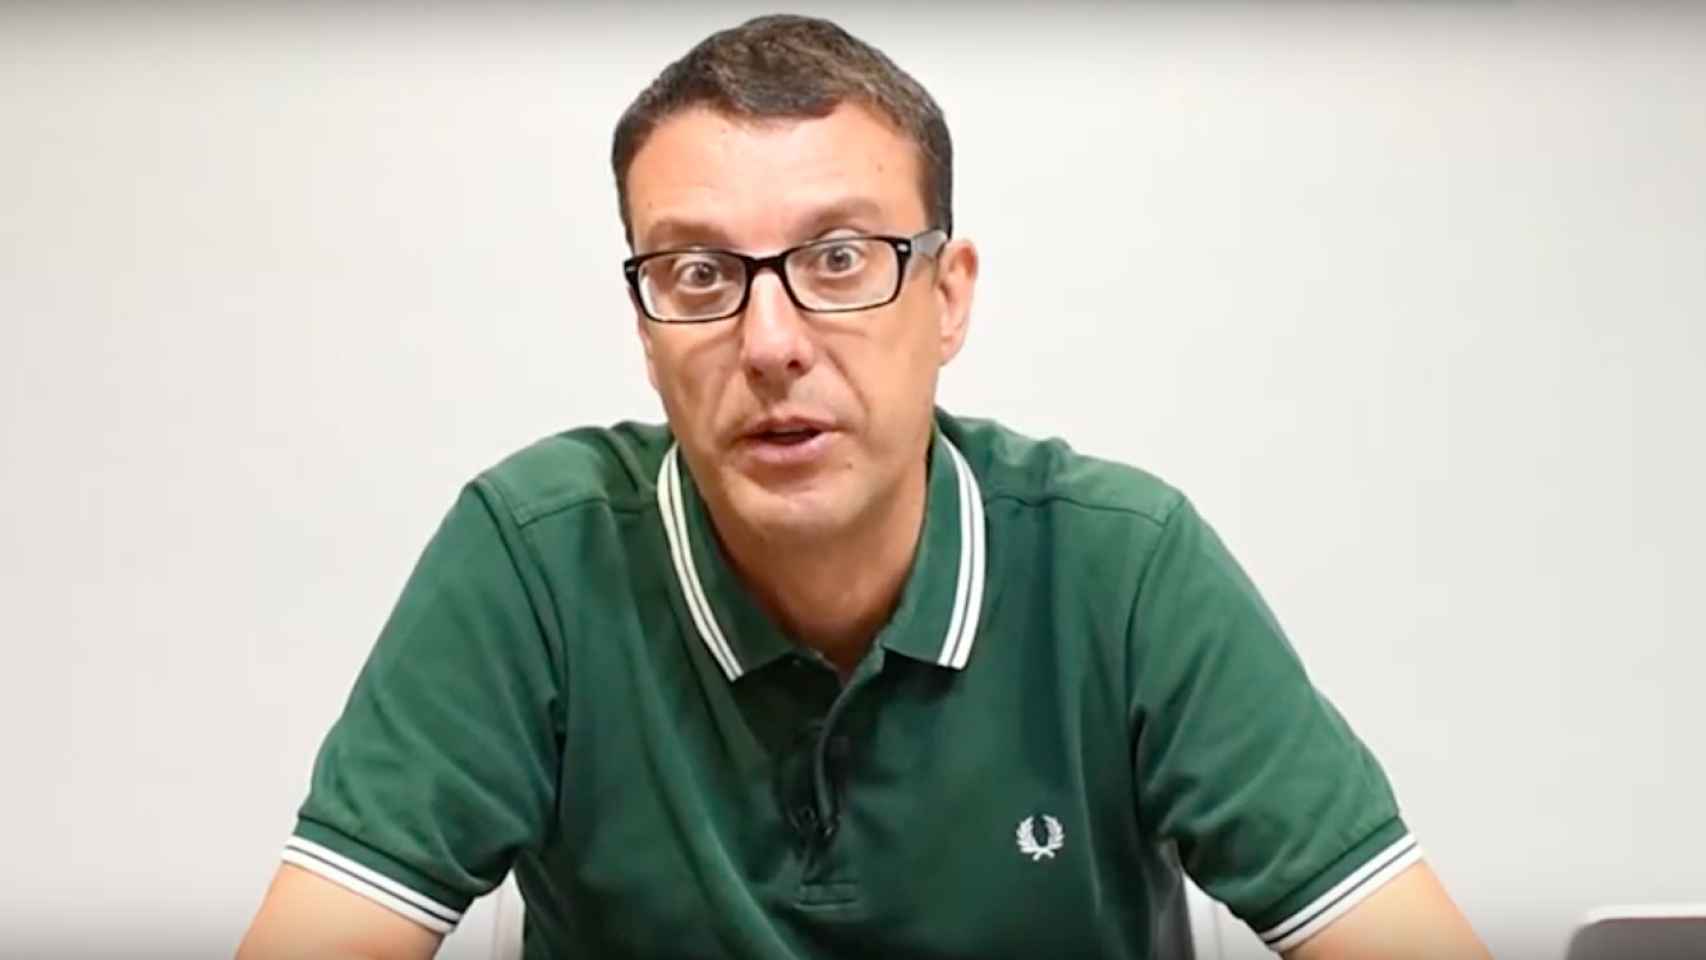 El director de Metrópoli Abierta, Lluís Regàs, explicando el nuevo foco de tensión de Barcelona / MA